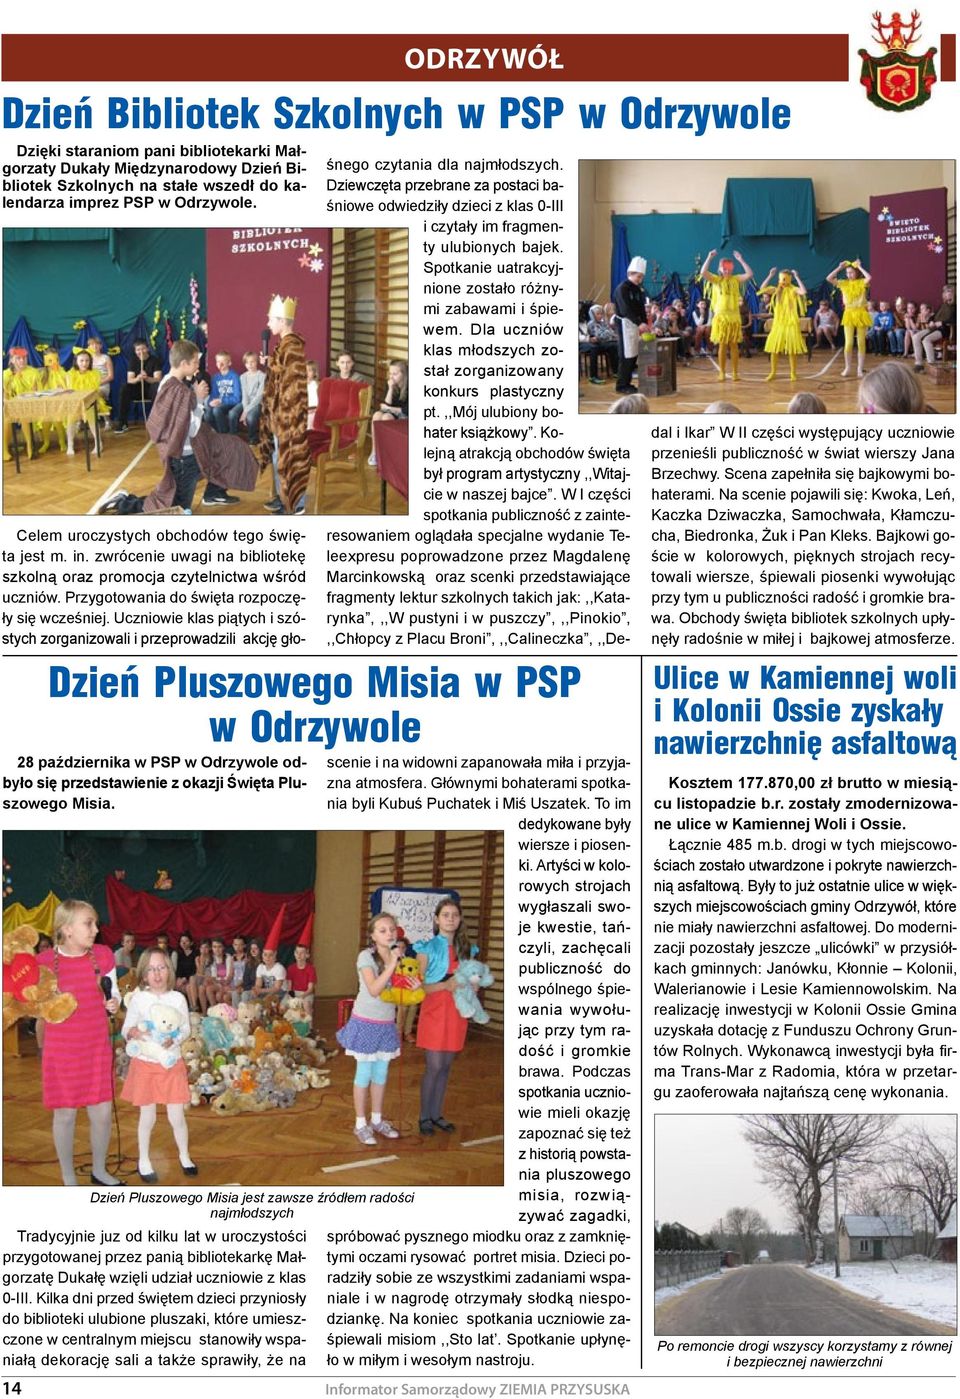 Tradycyjnie juz od kilku lat w uroczystości przygotowanej przez panią bibliotekarkę Małgorzatę Dukałę wzięli udział uczniowie z klas 0-III.